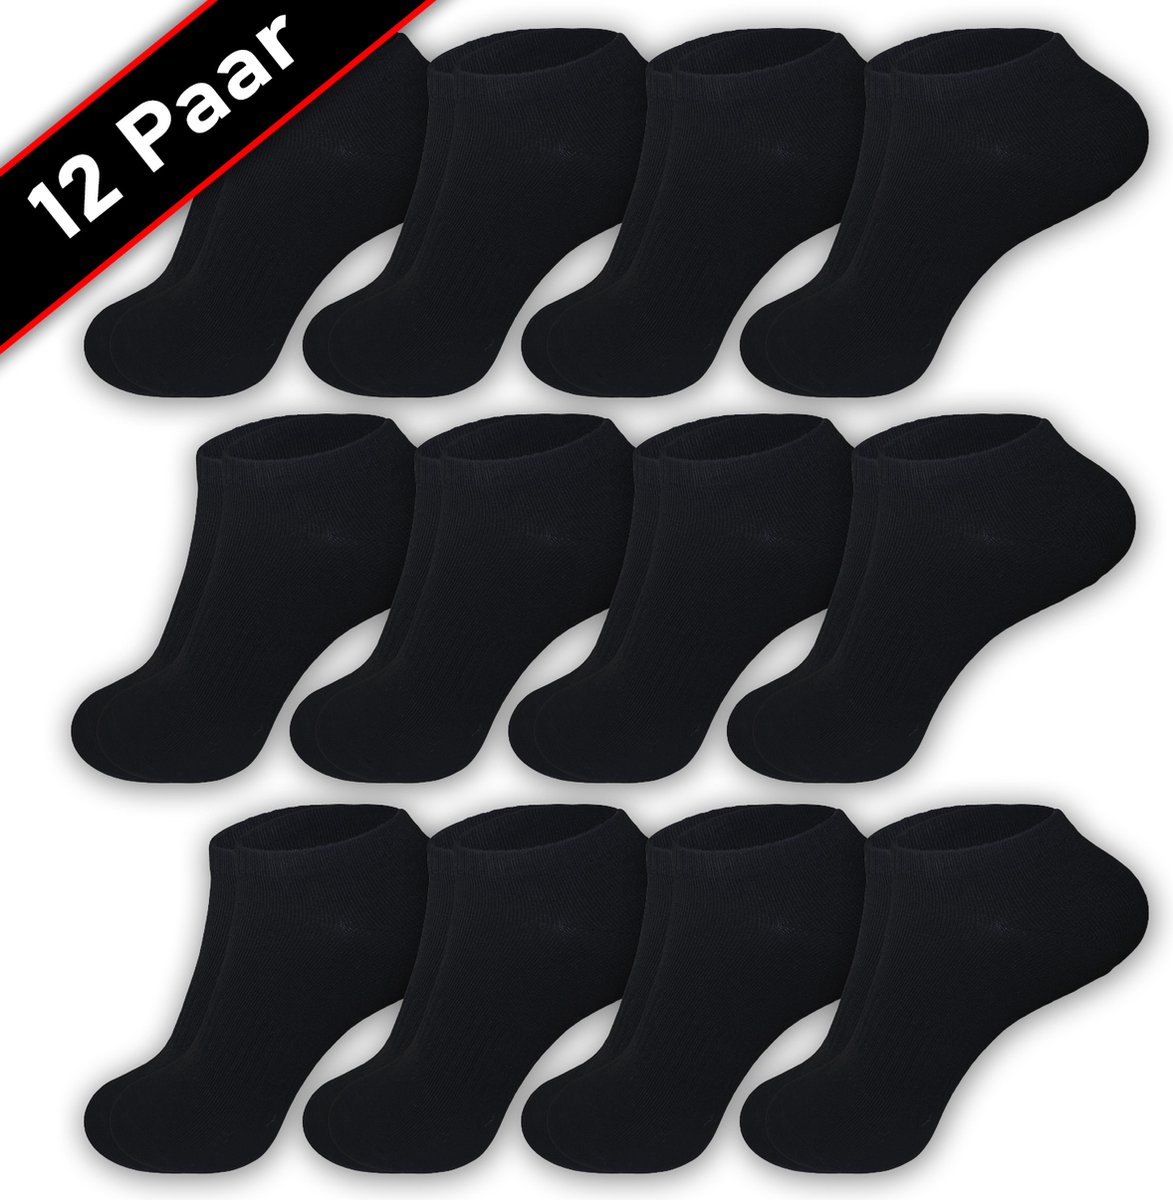 Blacktag - Enkelsokken - Sokken - Sneakersokken - Maat 36/40 - 12 Paar - Zwart - Katoen